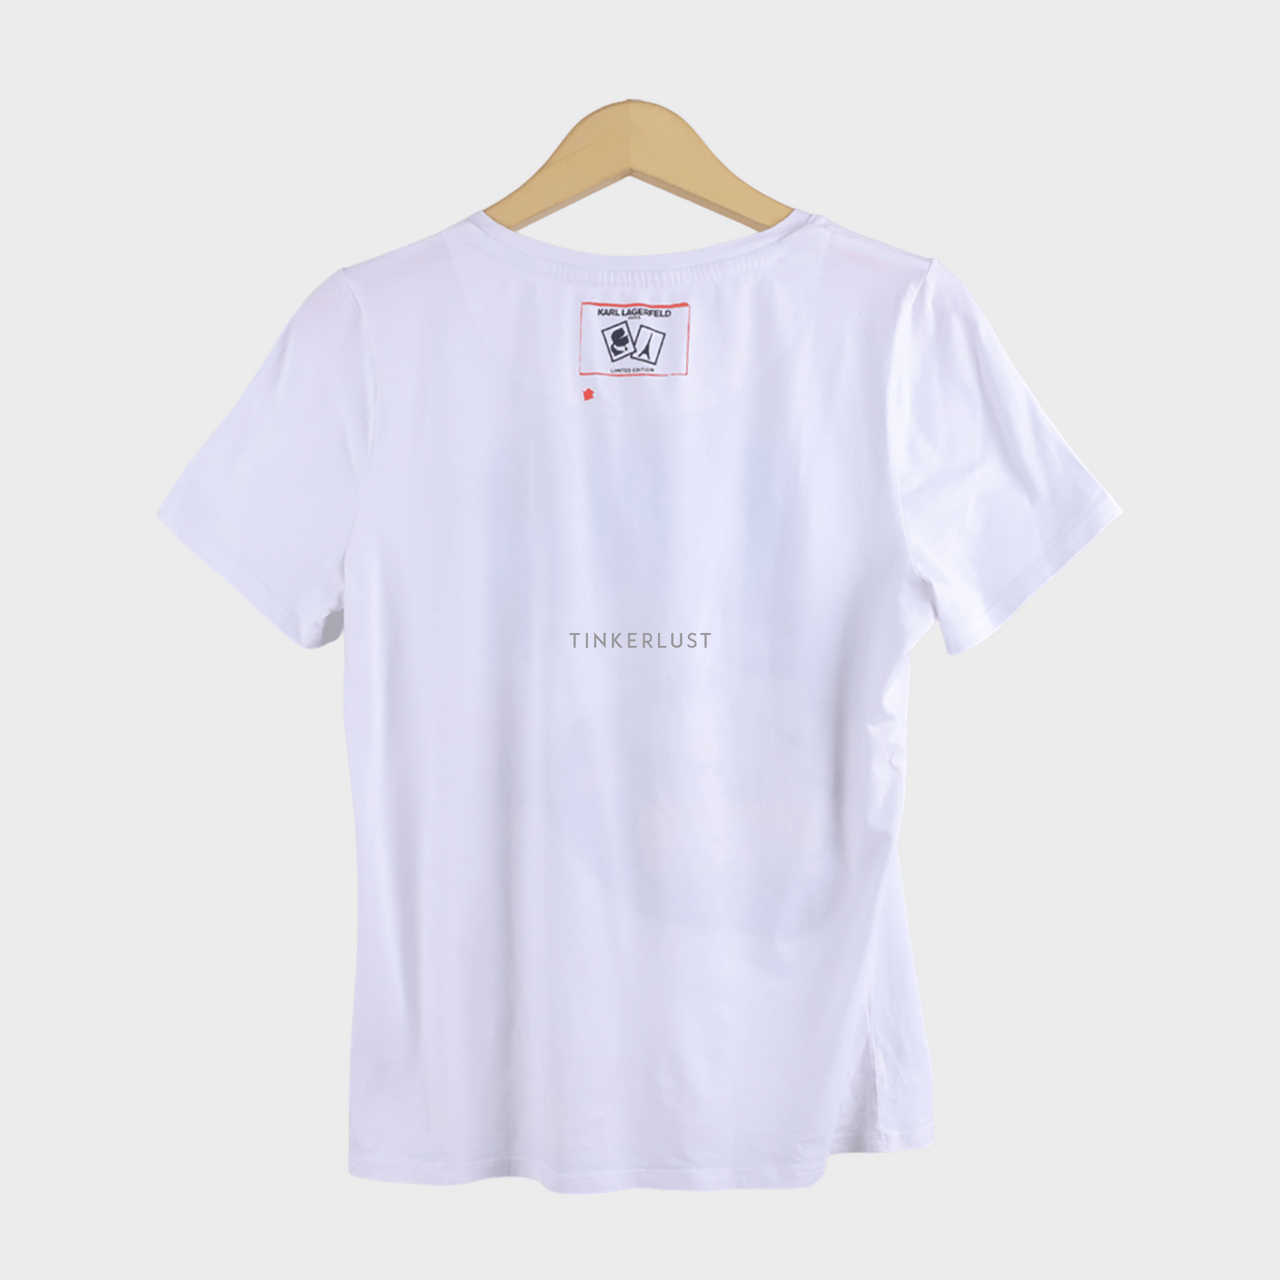 Karl Lagerfeld Road Trip Tee White T-Shirt